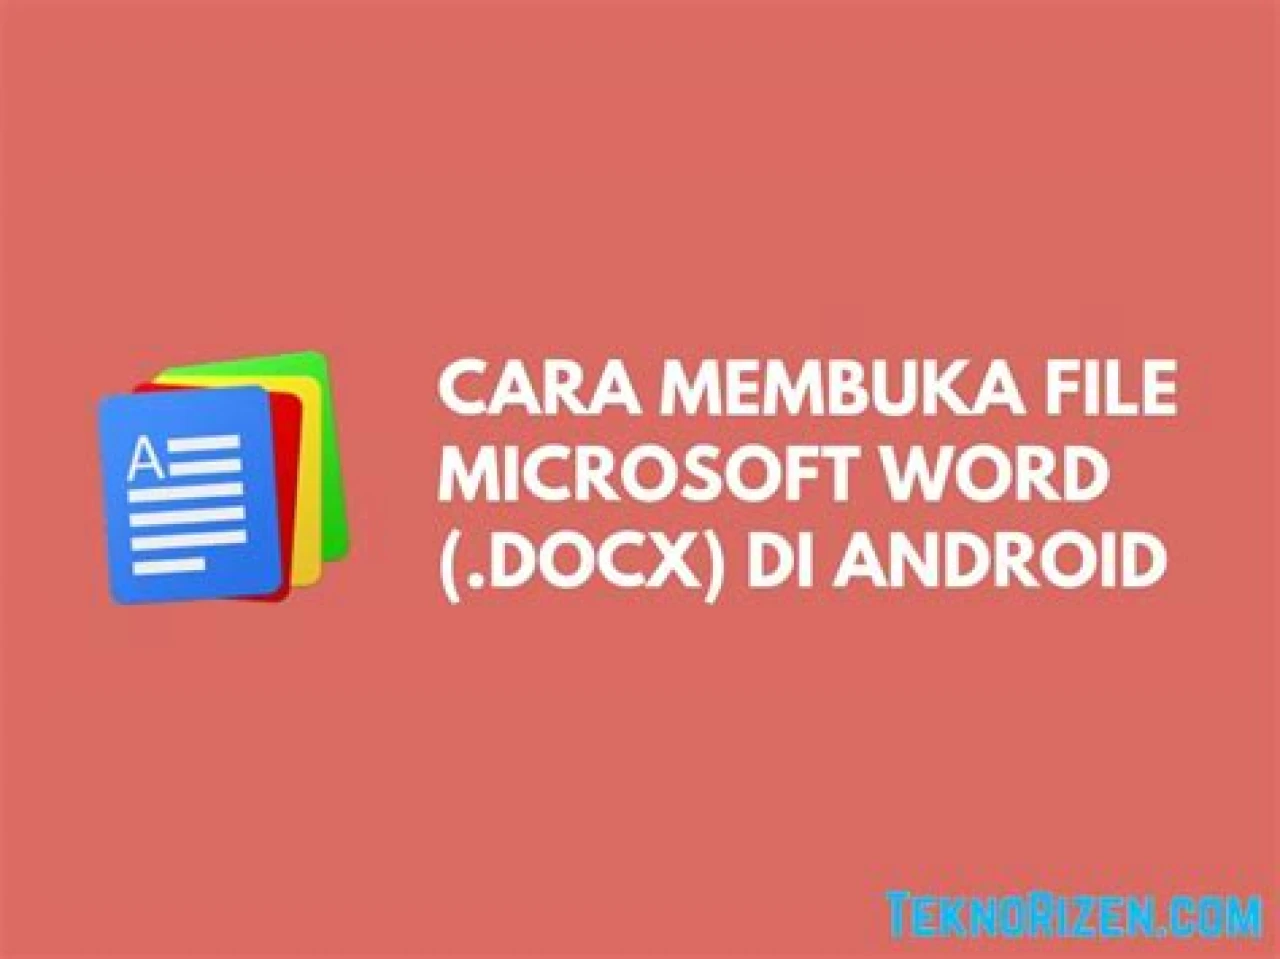 Cara Membuka File Docx (Ms Word) Di Android